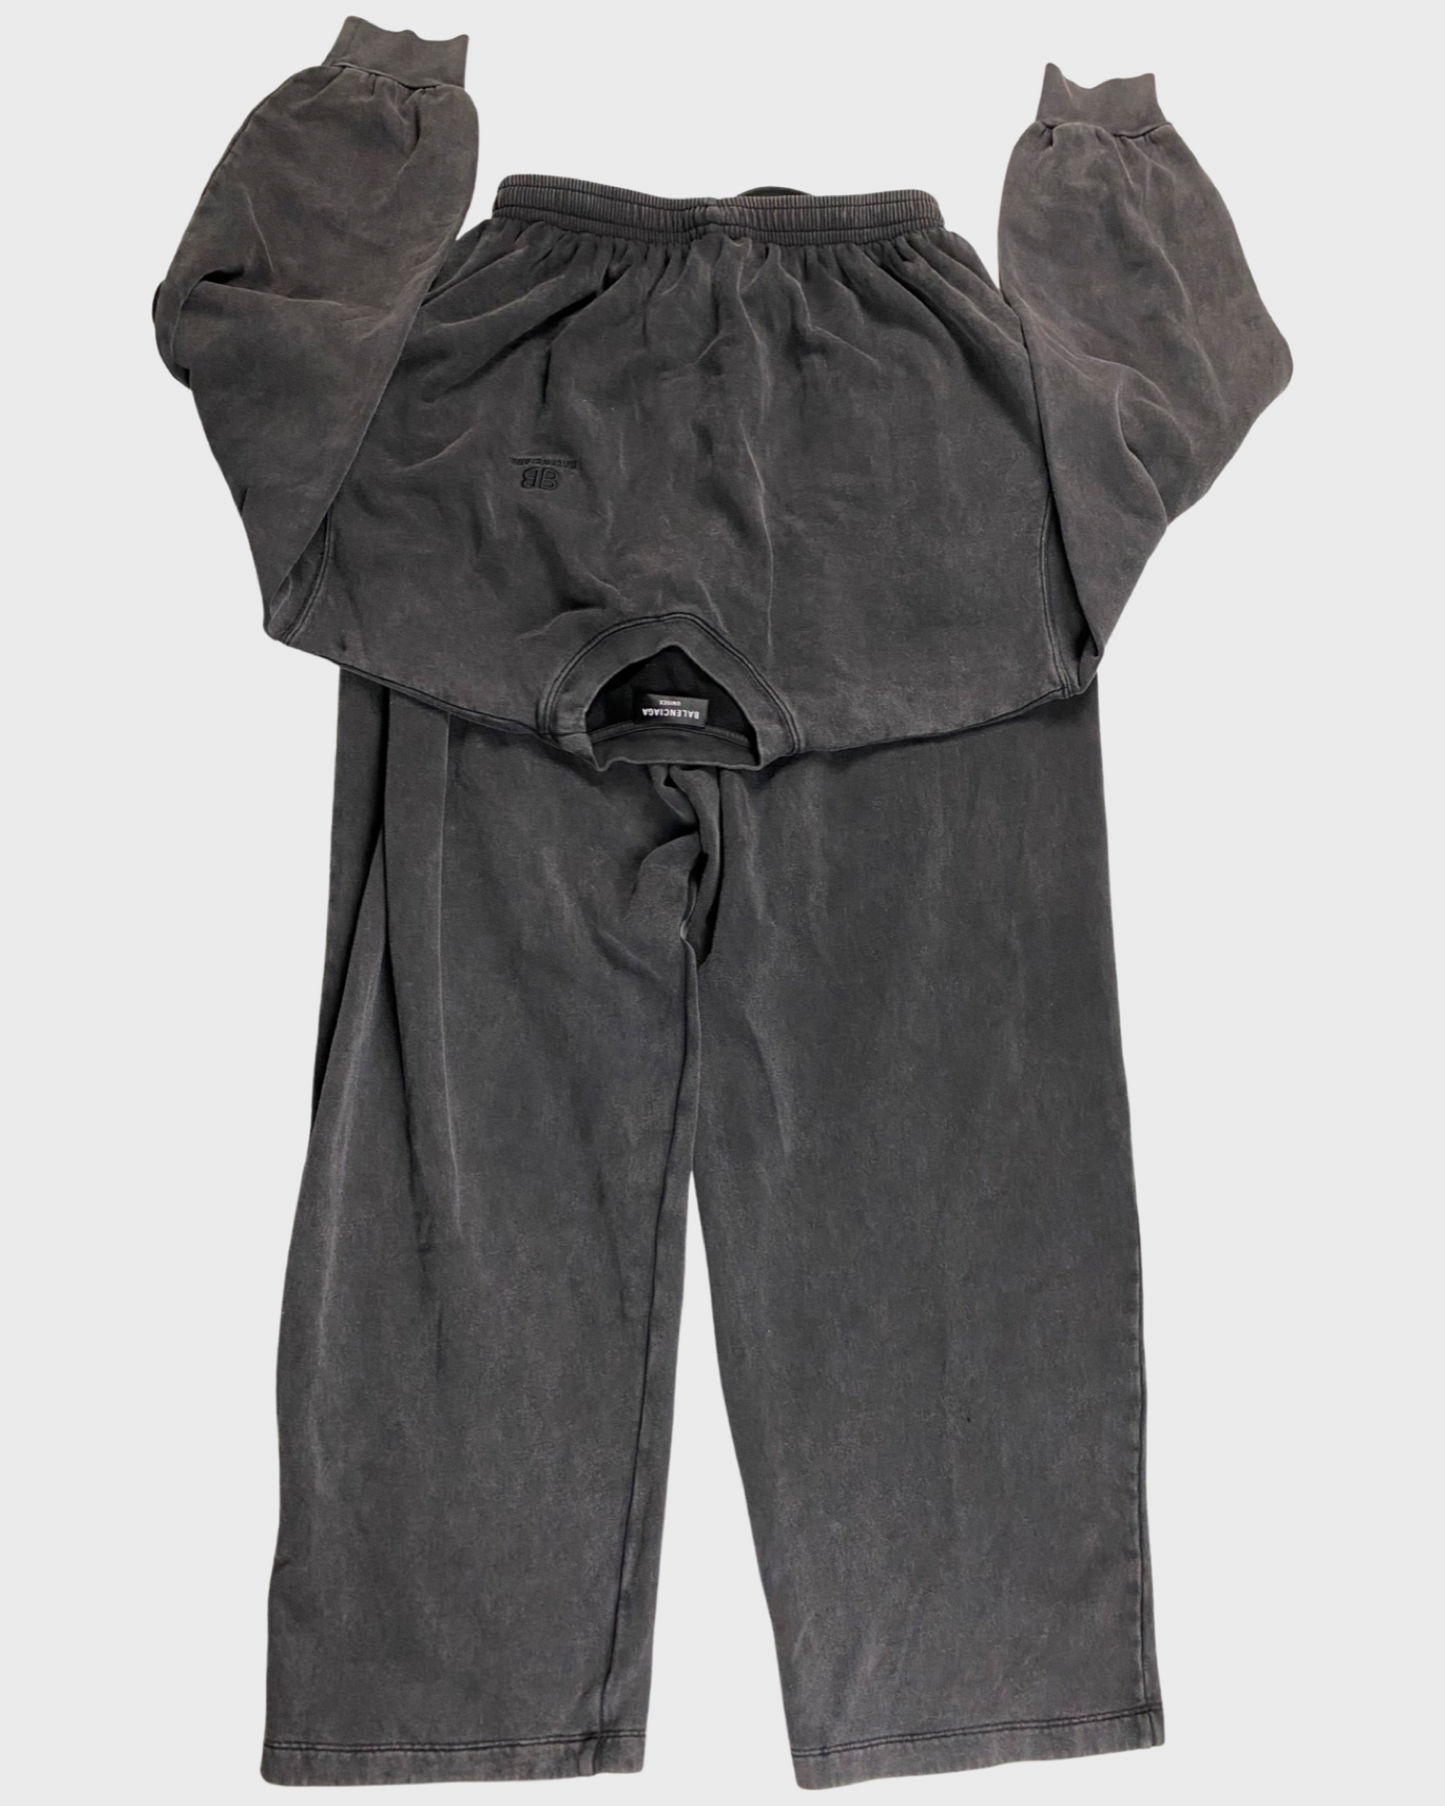 Balenciaga tied up sweater/crewneck sweatpants grey SZ:S